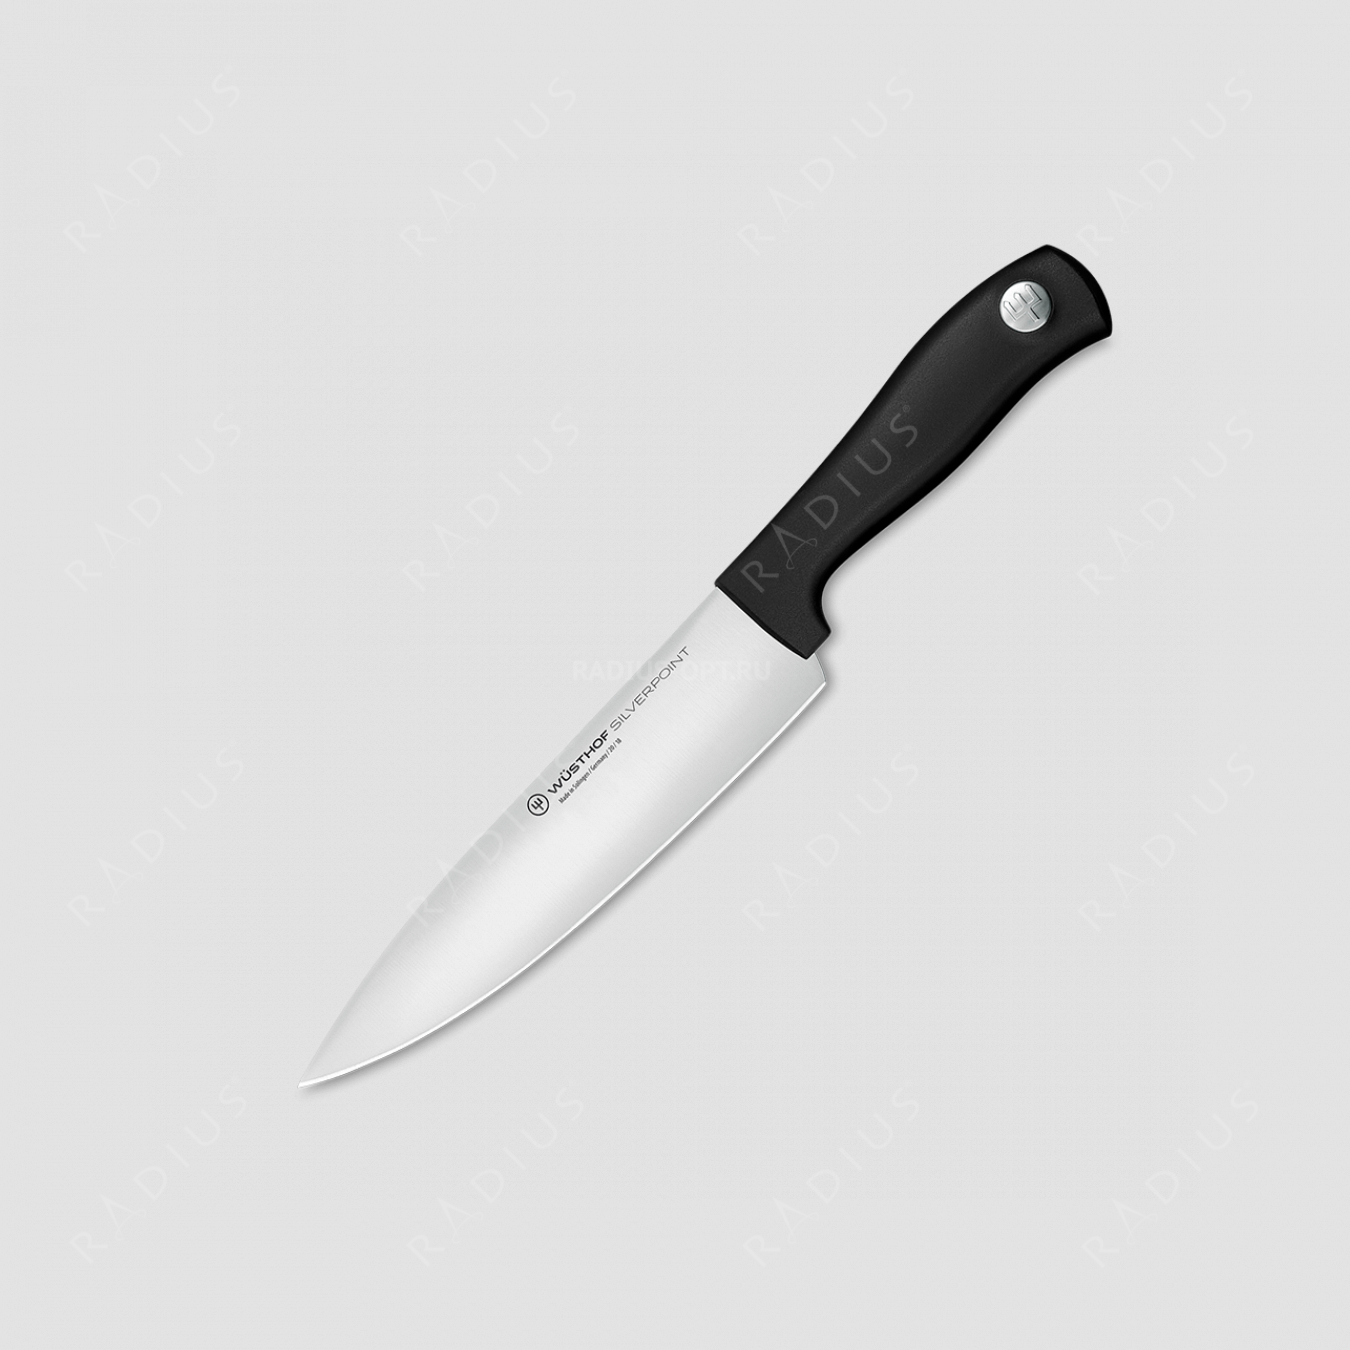 Профессиональный поварской кухонный нож 18 см, серия Silverpoint, WUESTHOF, Золинген, Германия